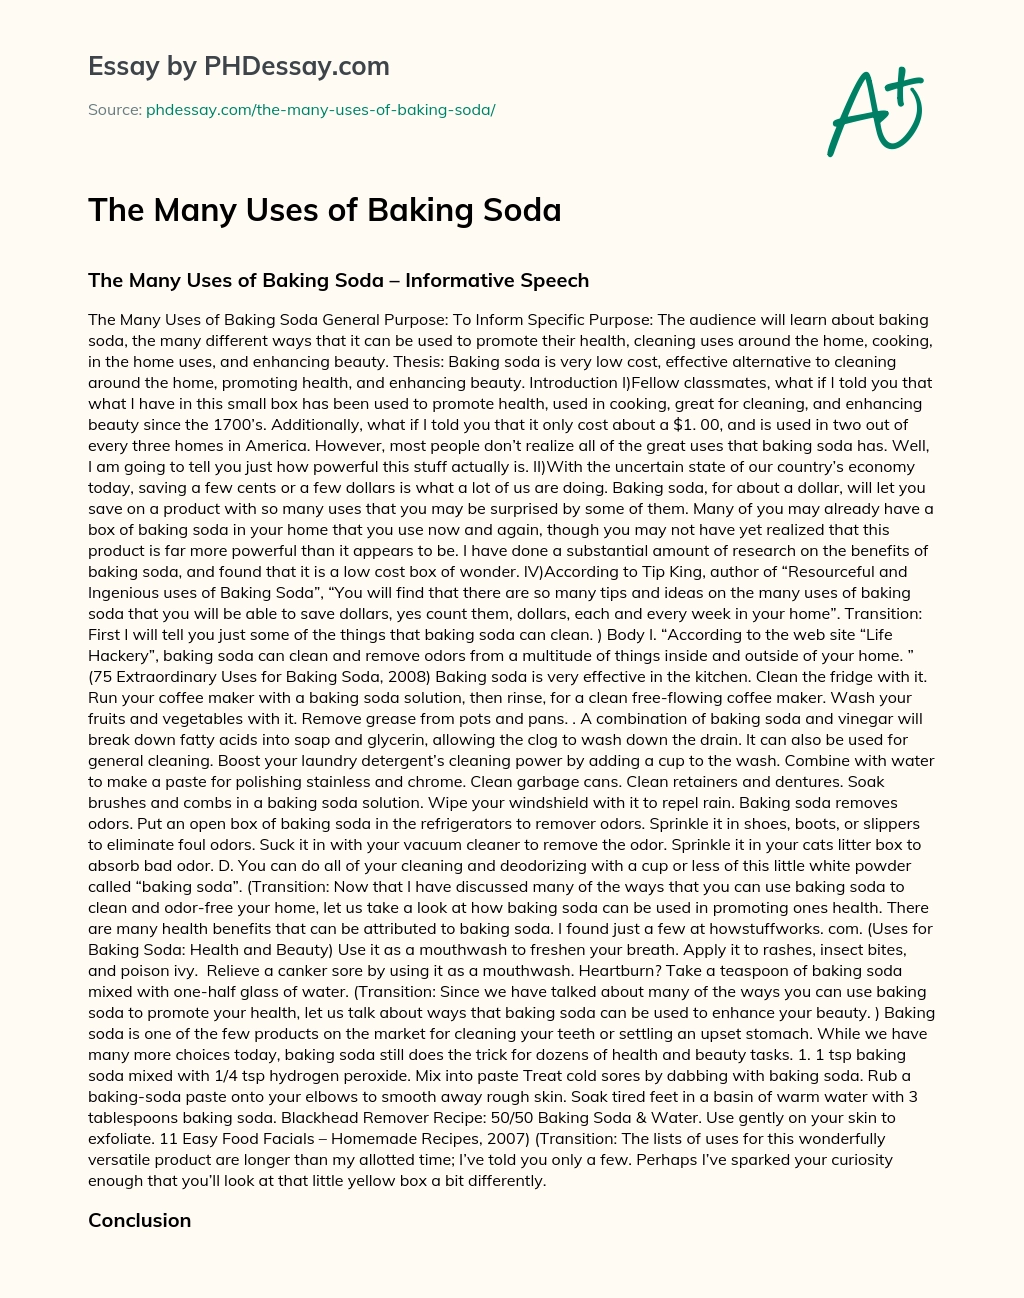 The Many Uses of Baking Soda essay